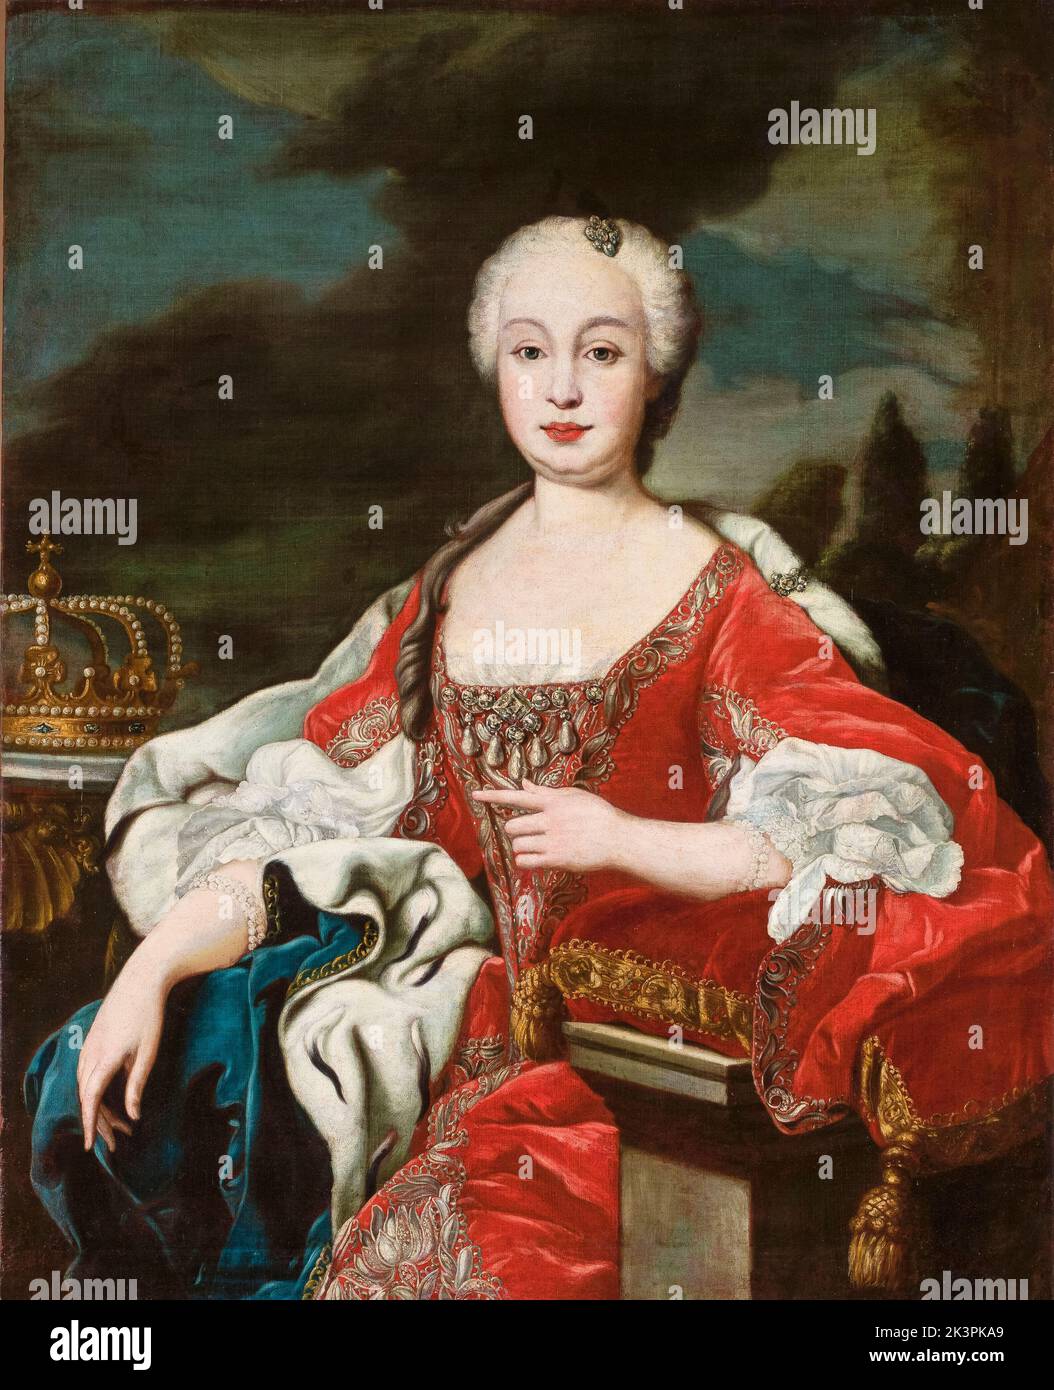 María Bárbara de Braganza, (1711-1758), Queen Consort of Spain, portrait painting in oil on canvas by unknown artist, circa 1746 Stock Photo